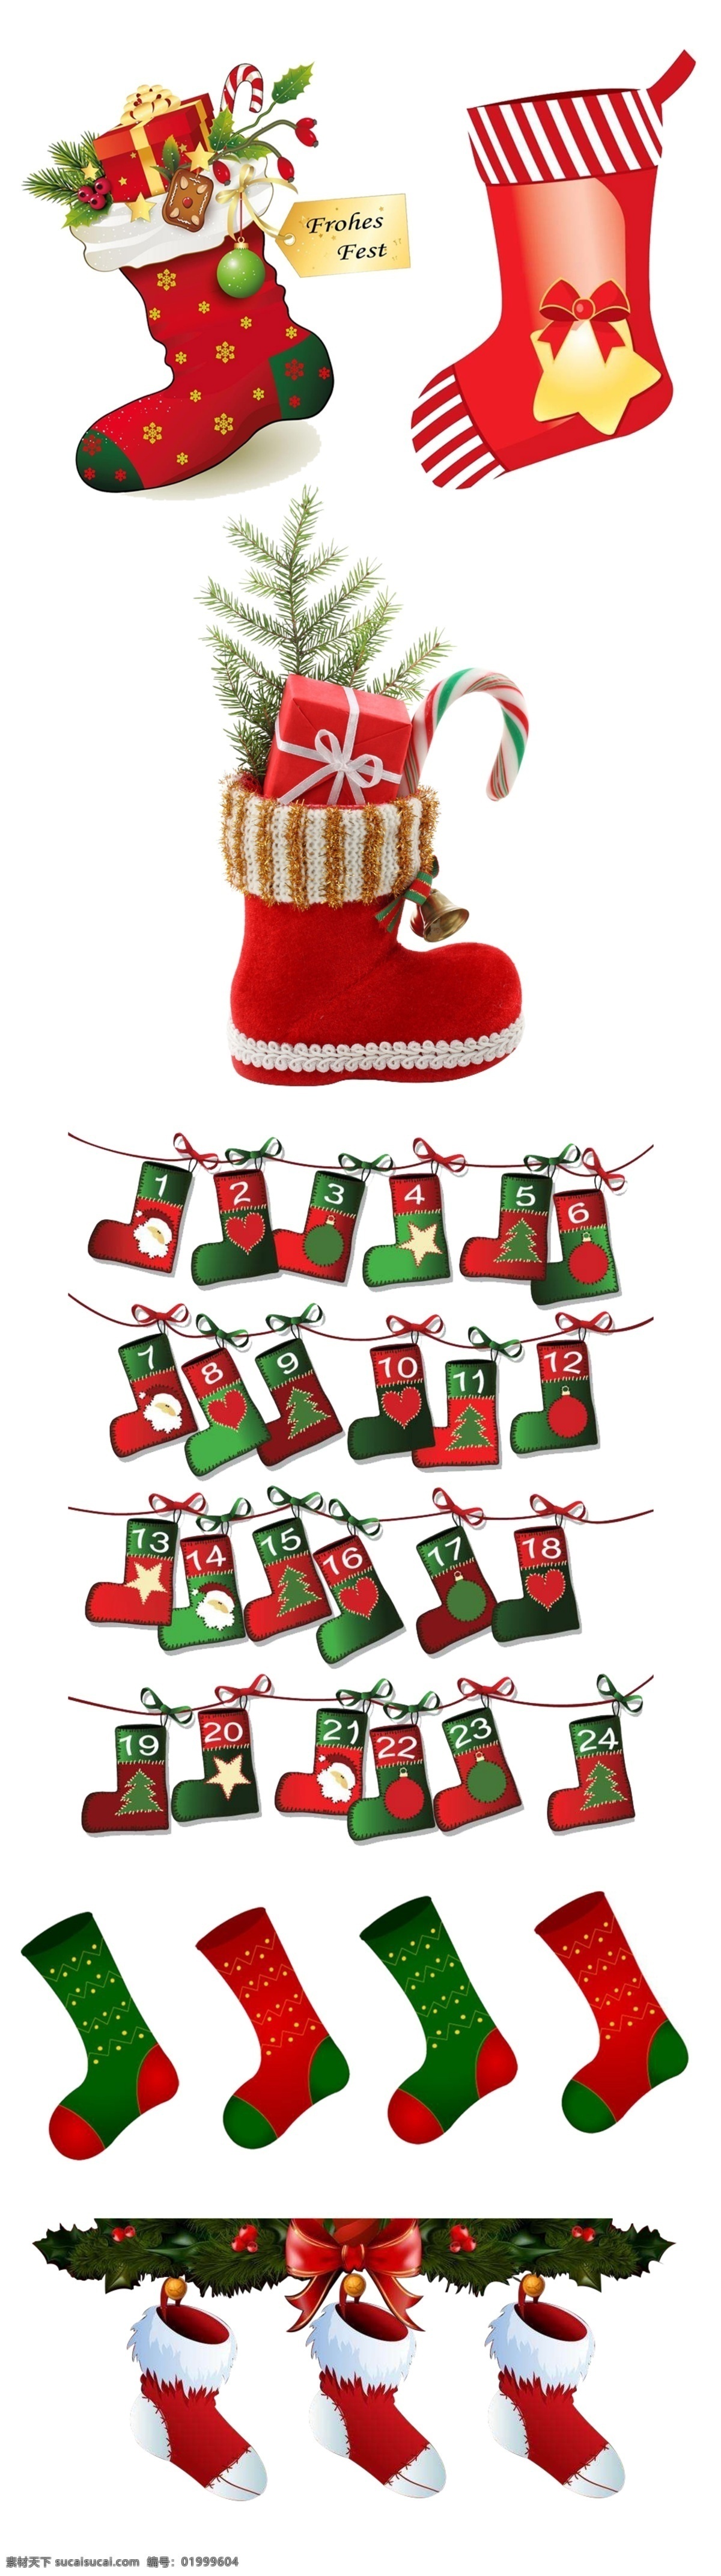 圣诞 元素 鞋 袜子 冬季 促销 圣诞元素 圣诞鞋 圣诞袜子 数字袜子 冬季促销 圣诞老人袜 圣诞树 2018春